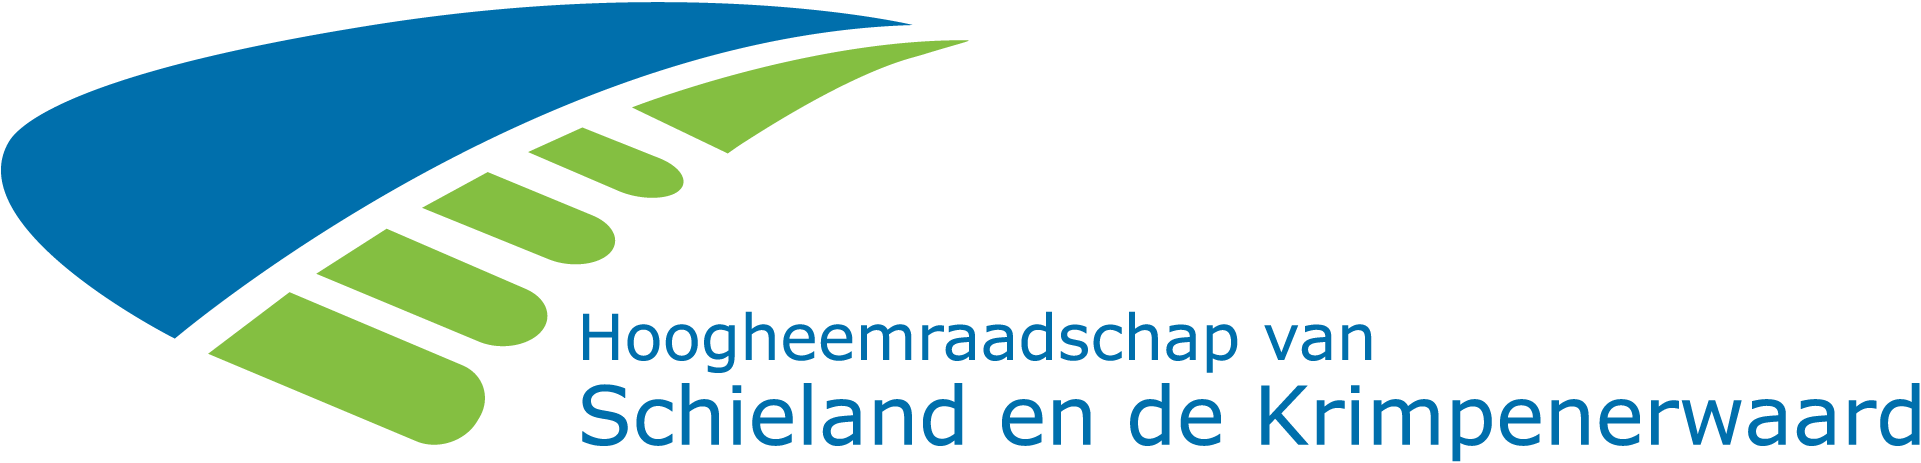 Logo hoogheemraadschap van schieland en de krimpenerwaard